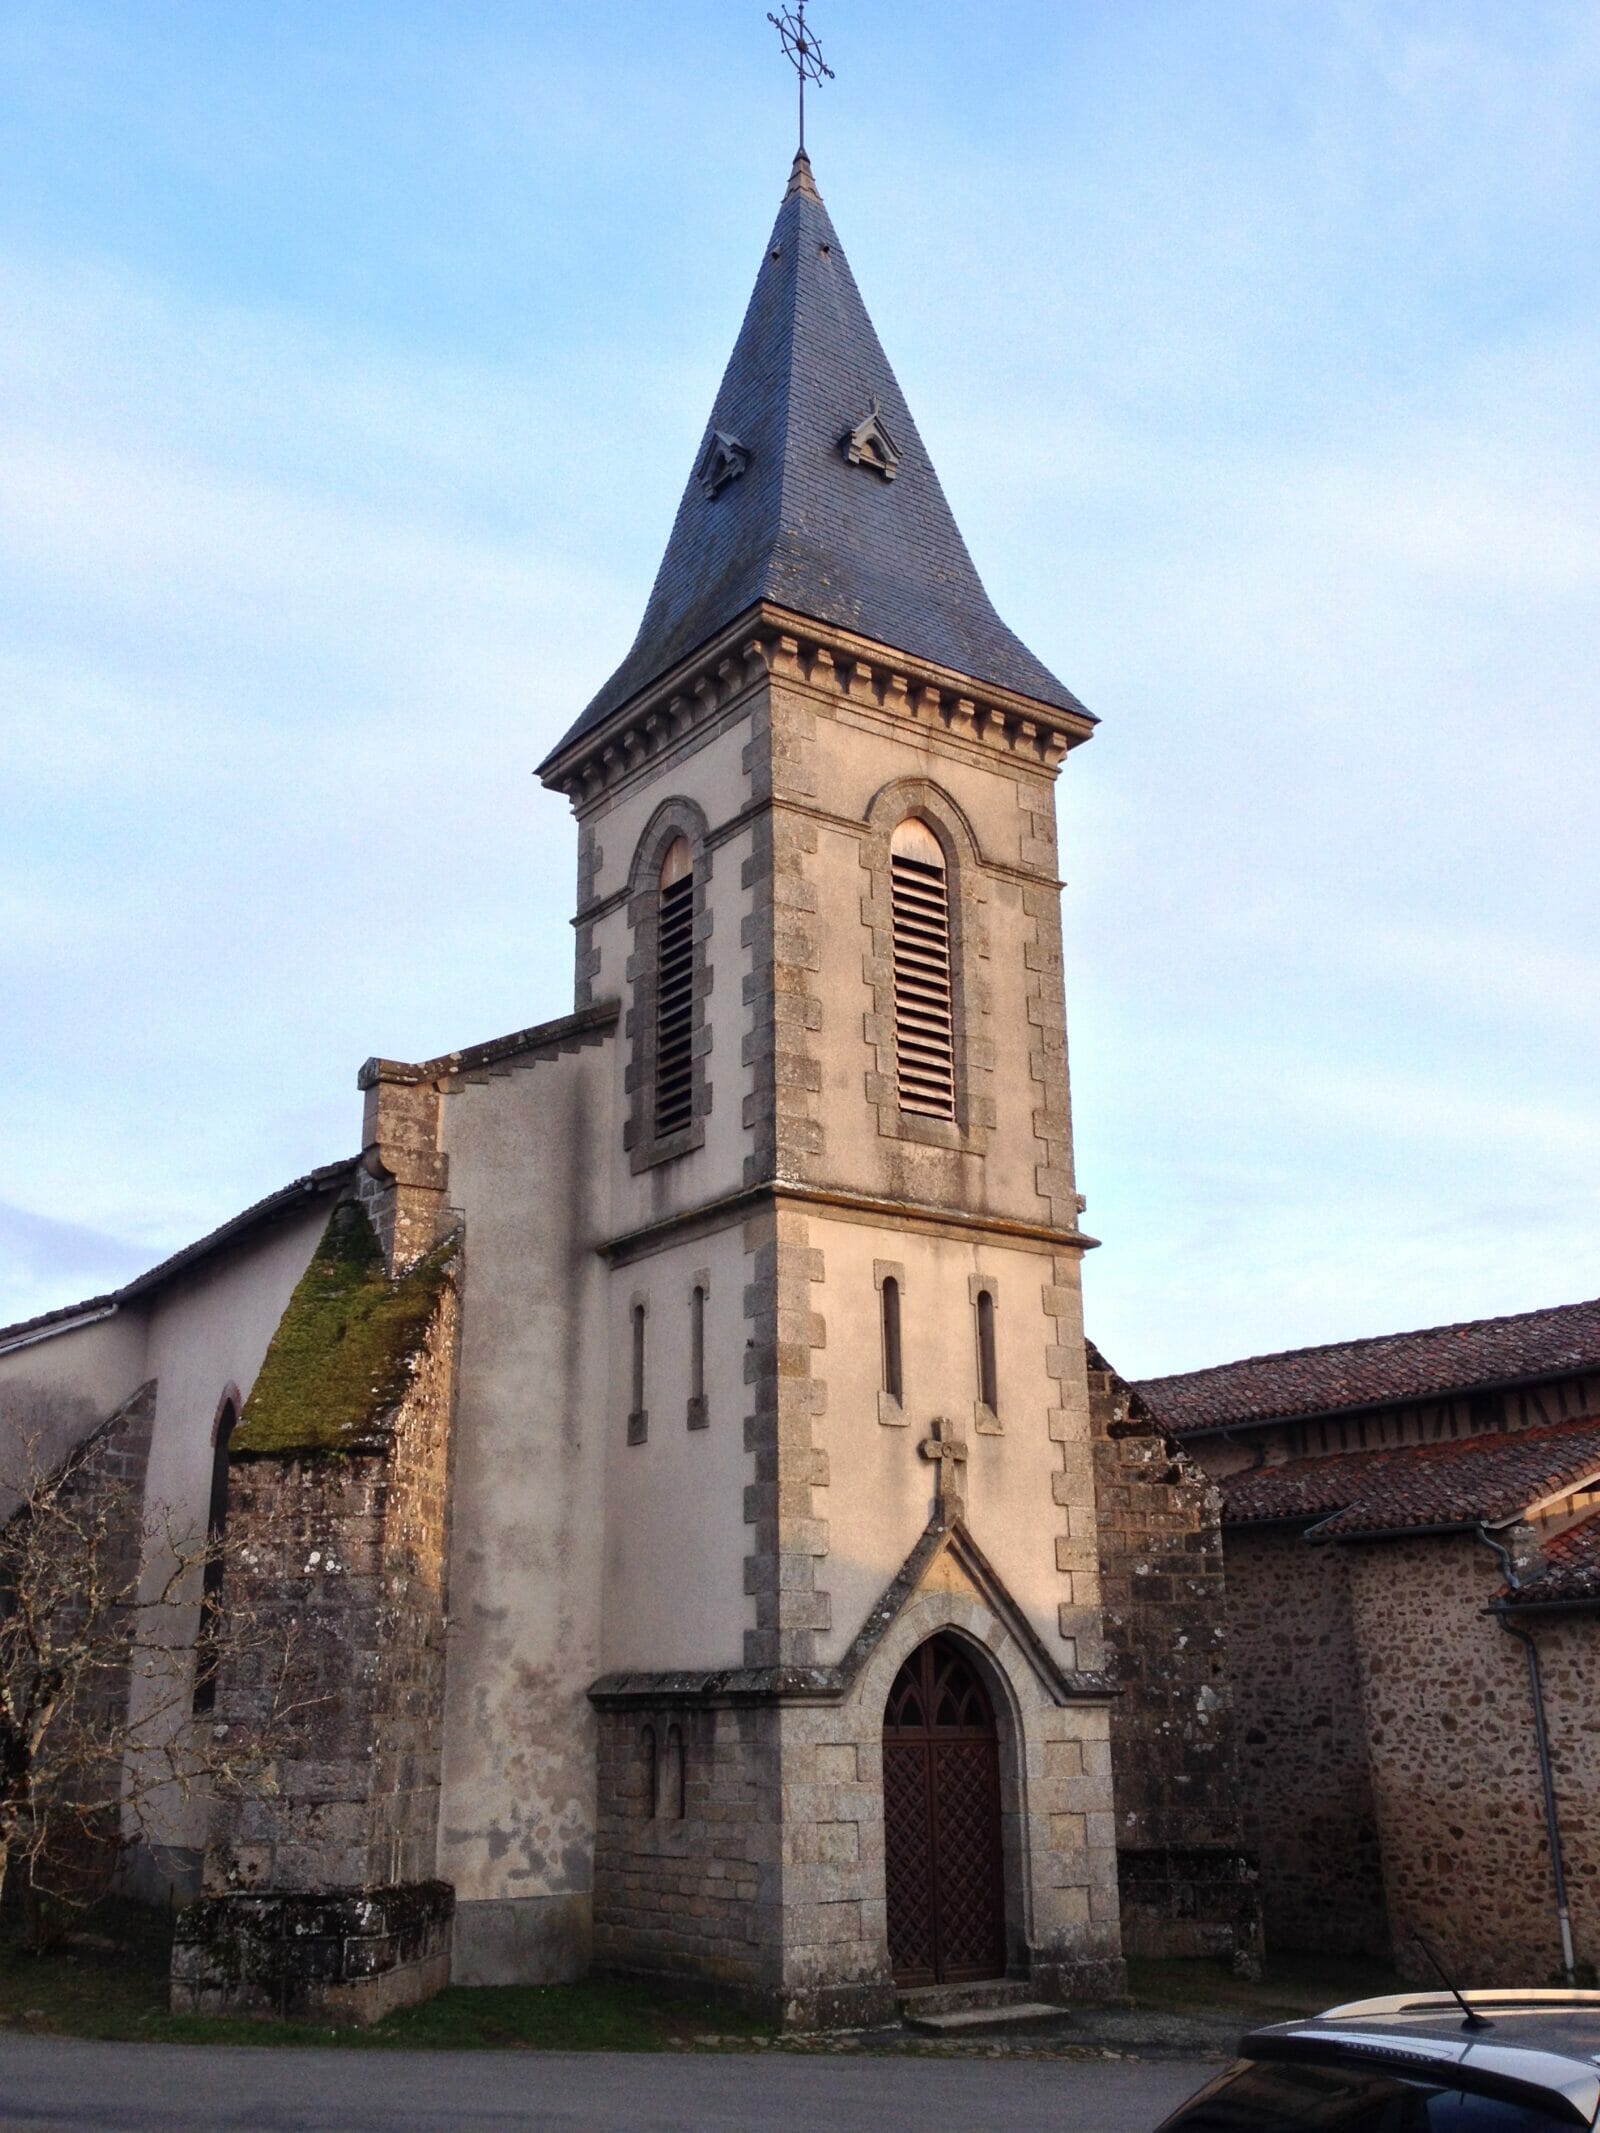 Saint-Priest-sous-Aixe